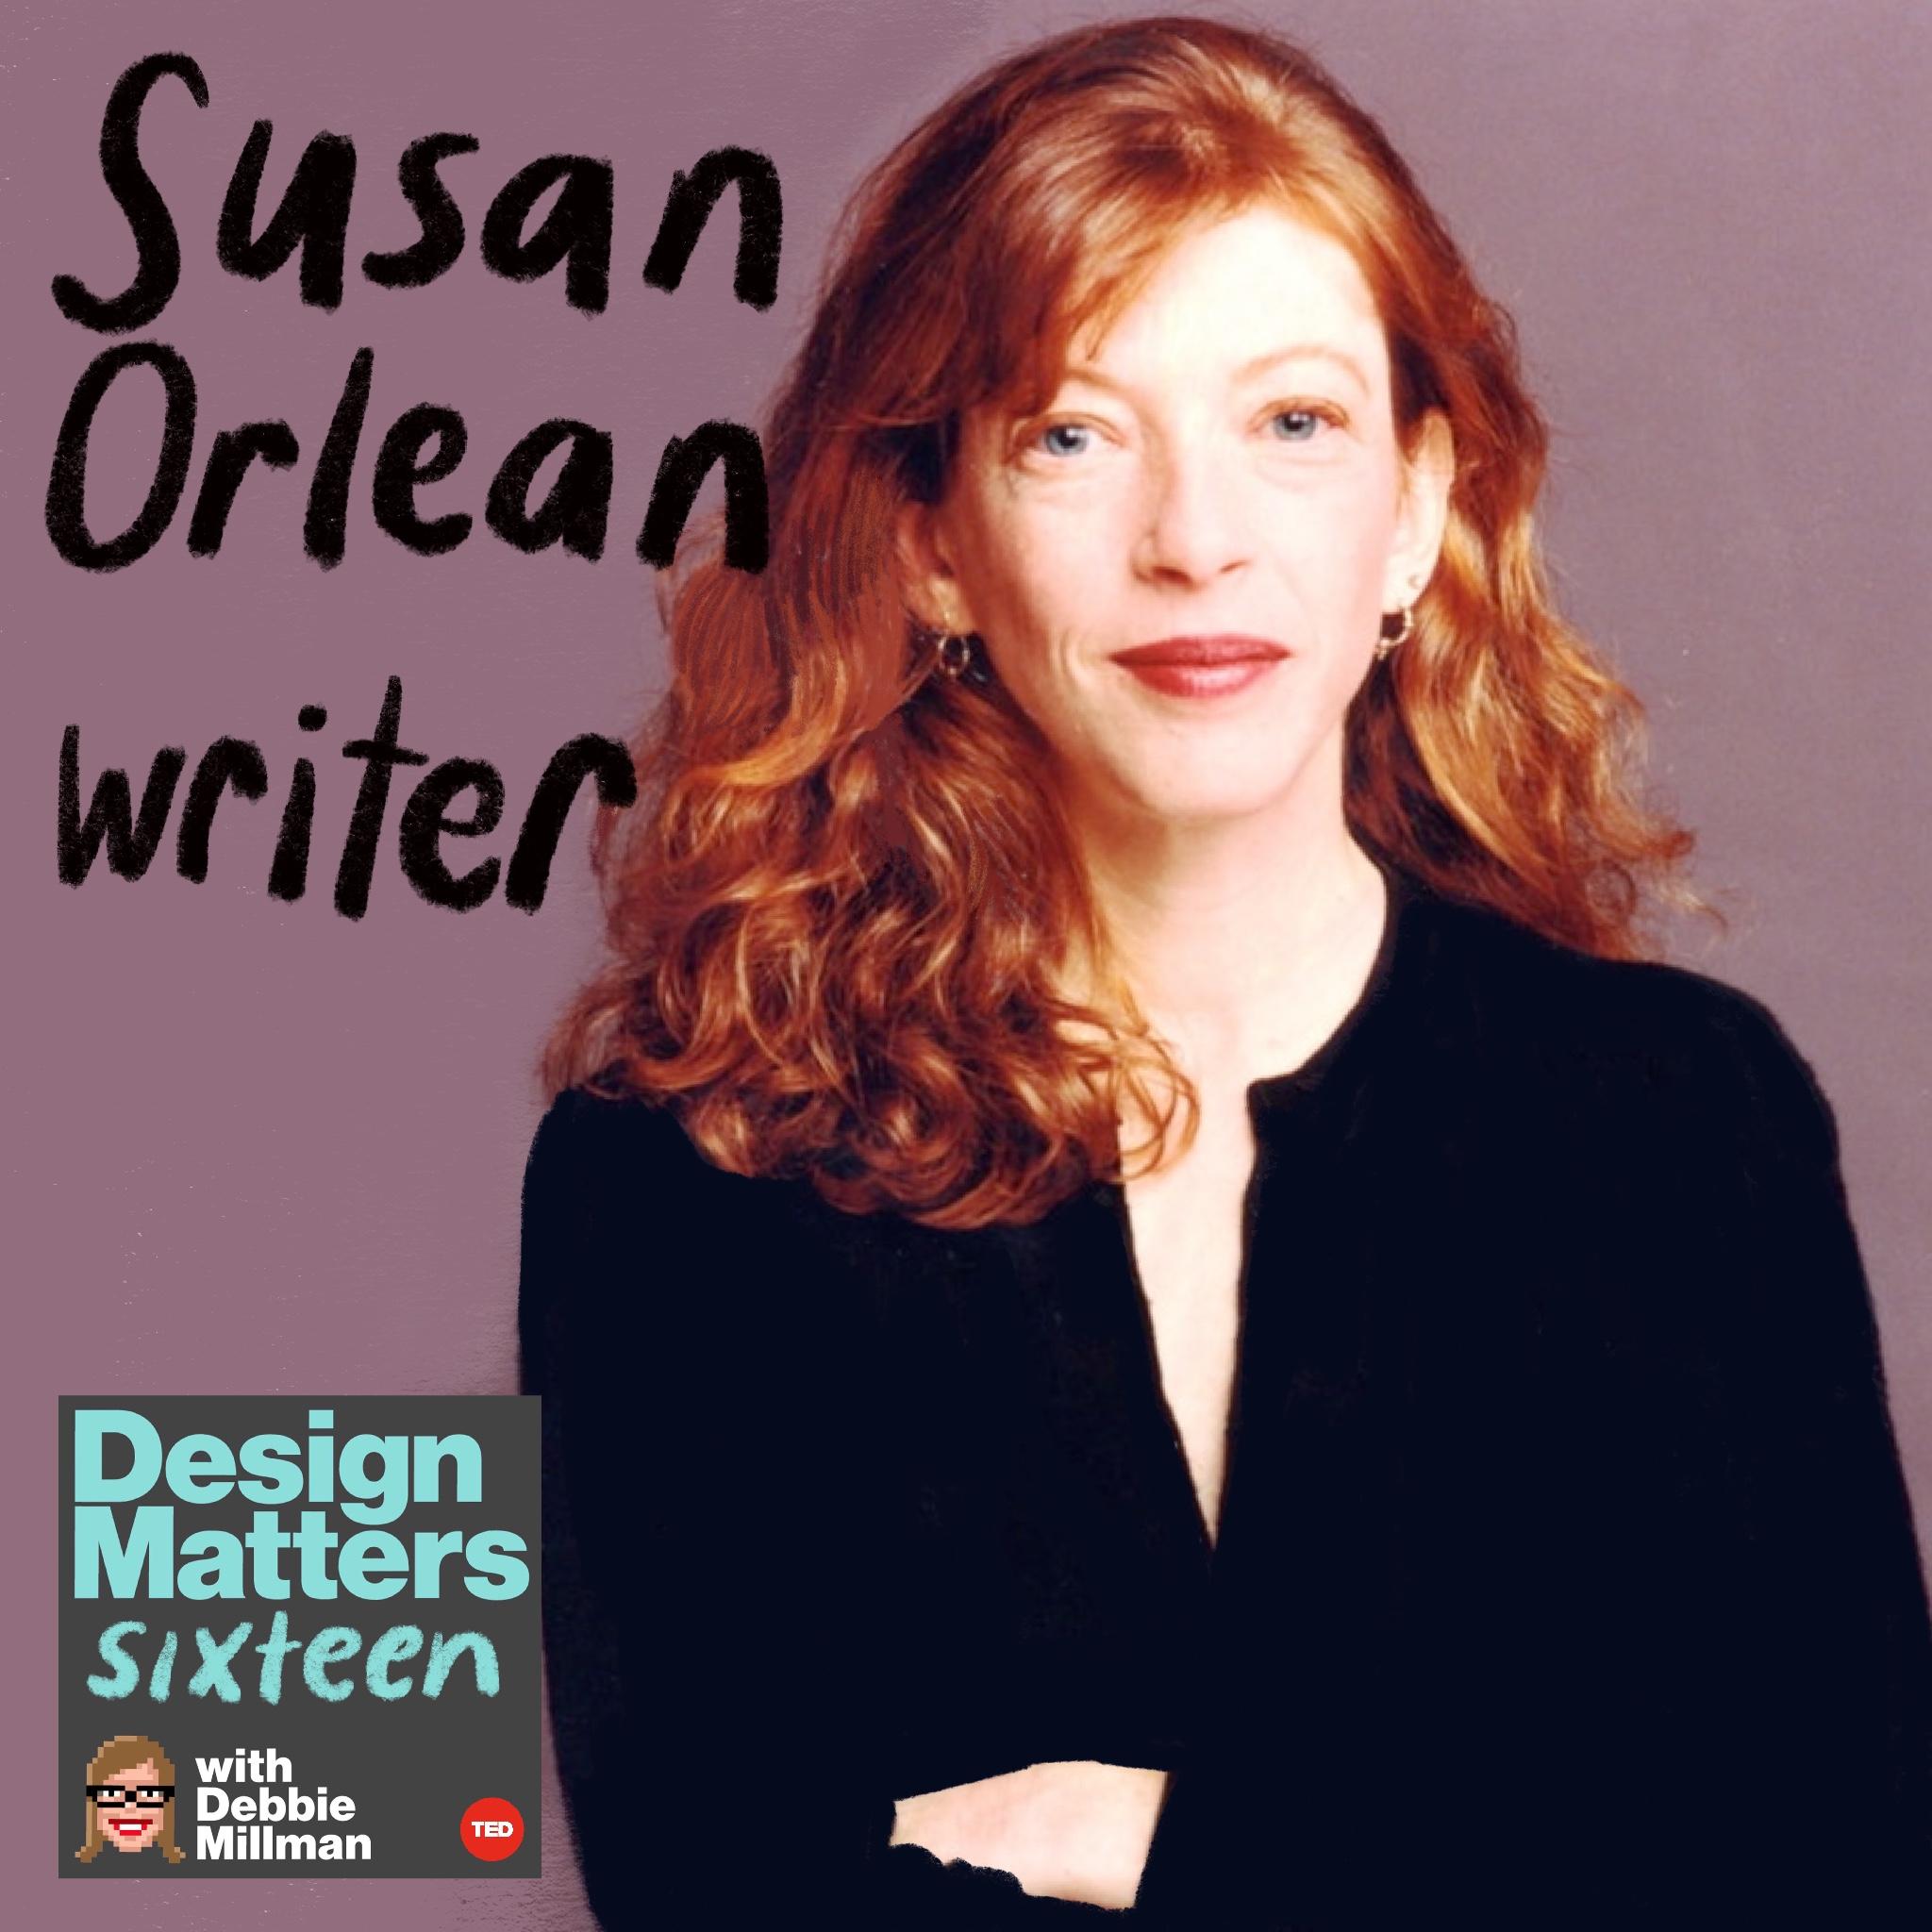 Thumbnail for "Susan Orlean".